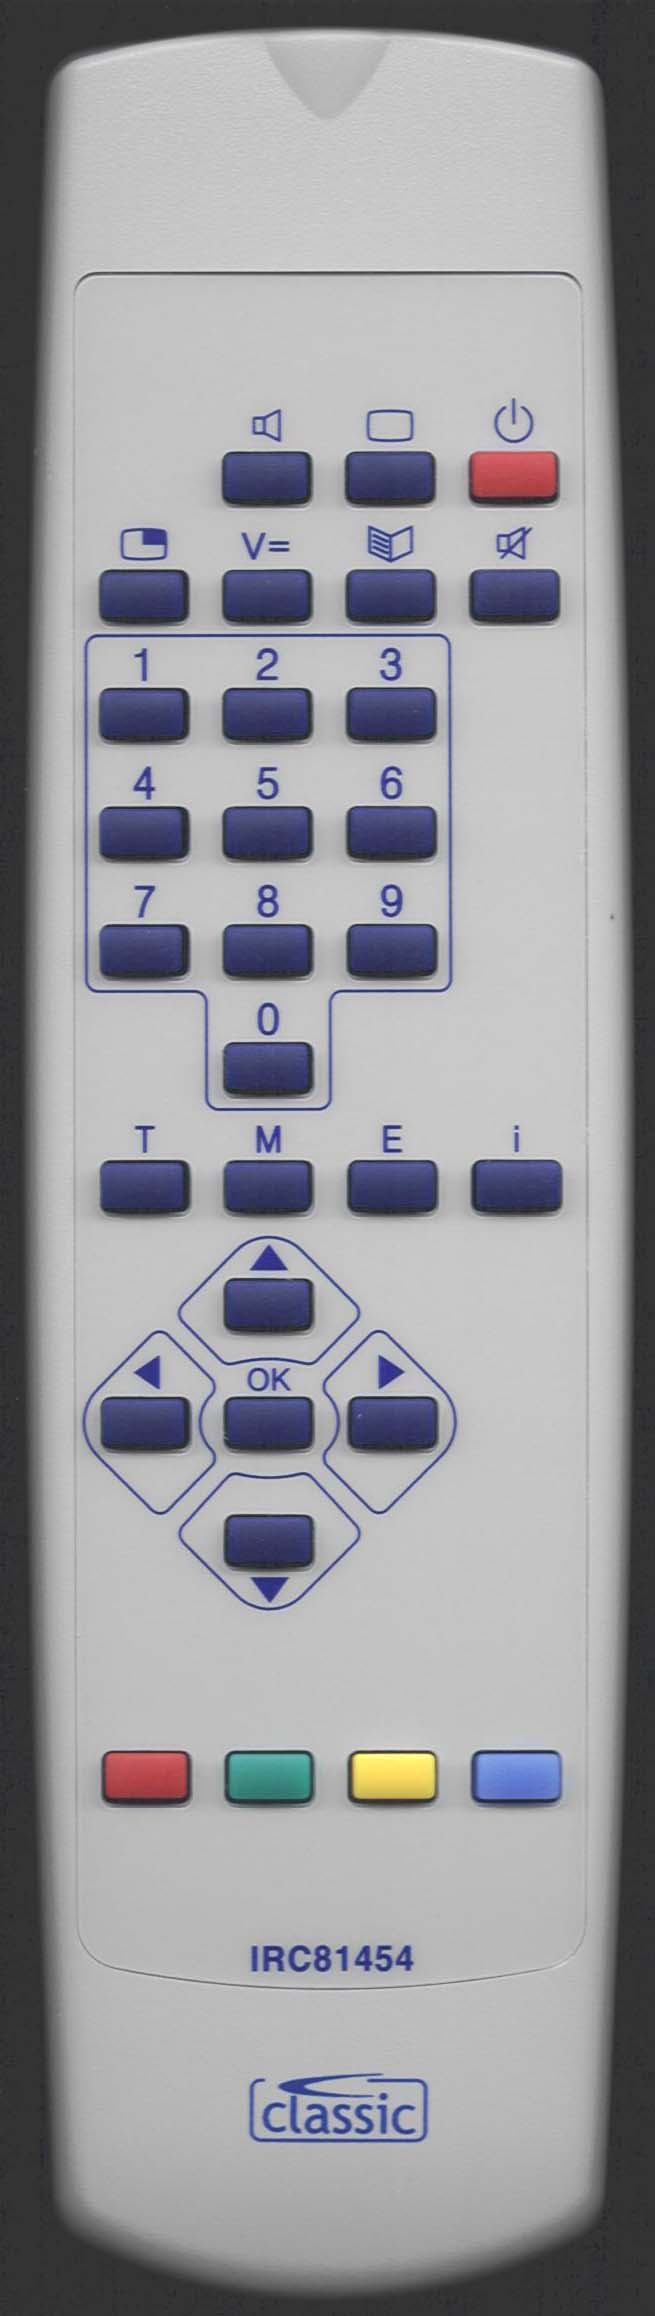 Loewe ACONDA 9281ZW Remote Control